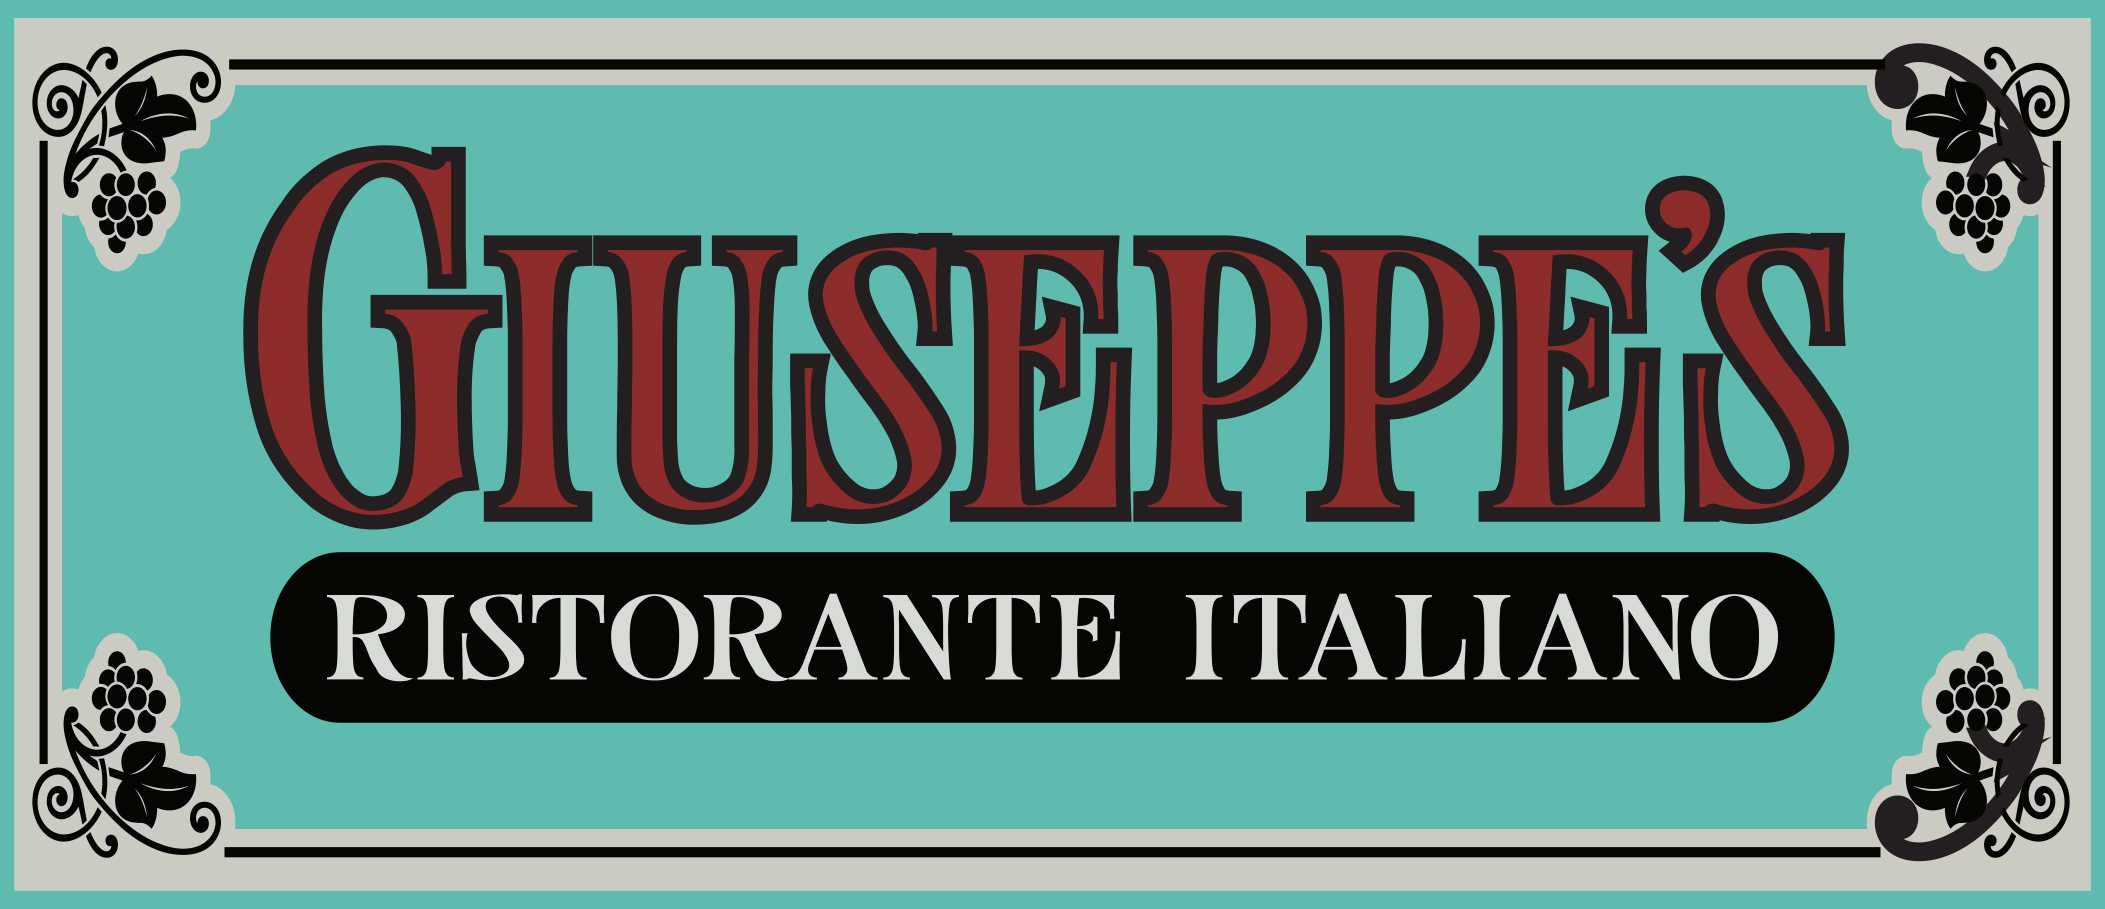 Giuseppe's Ristorante Italiano